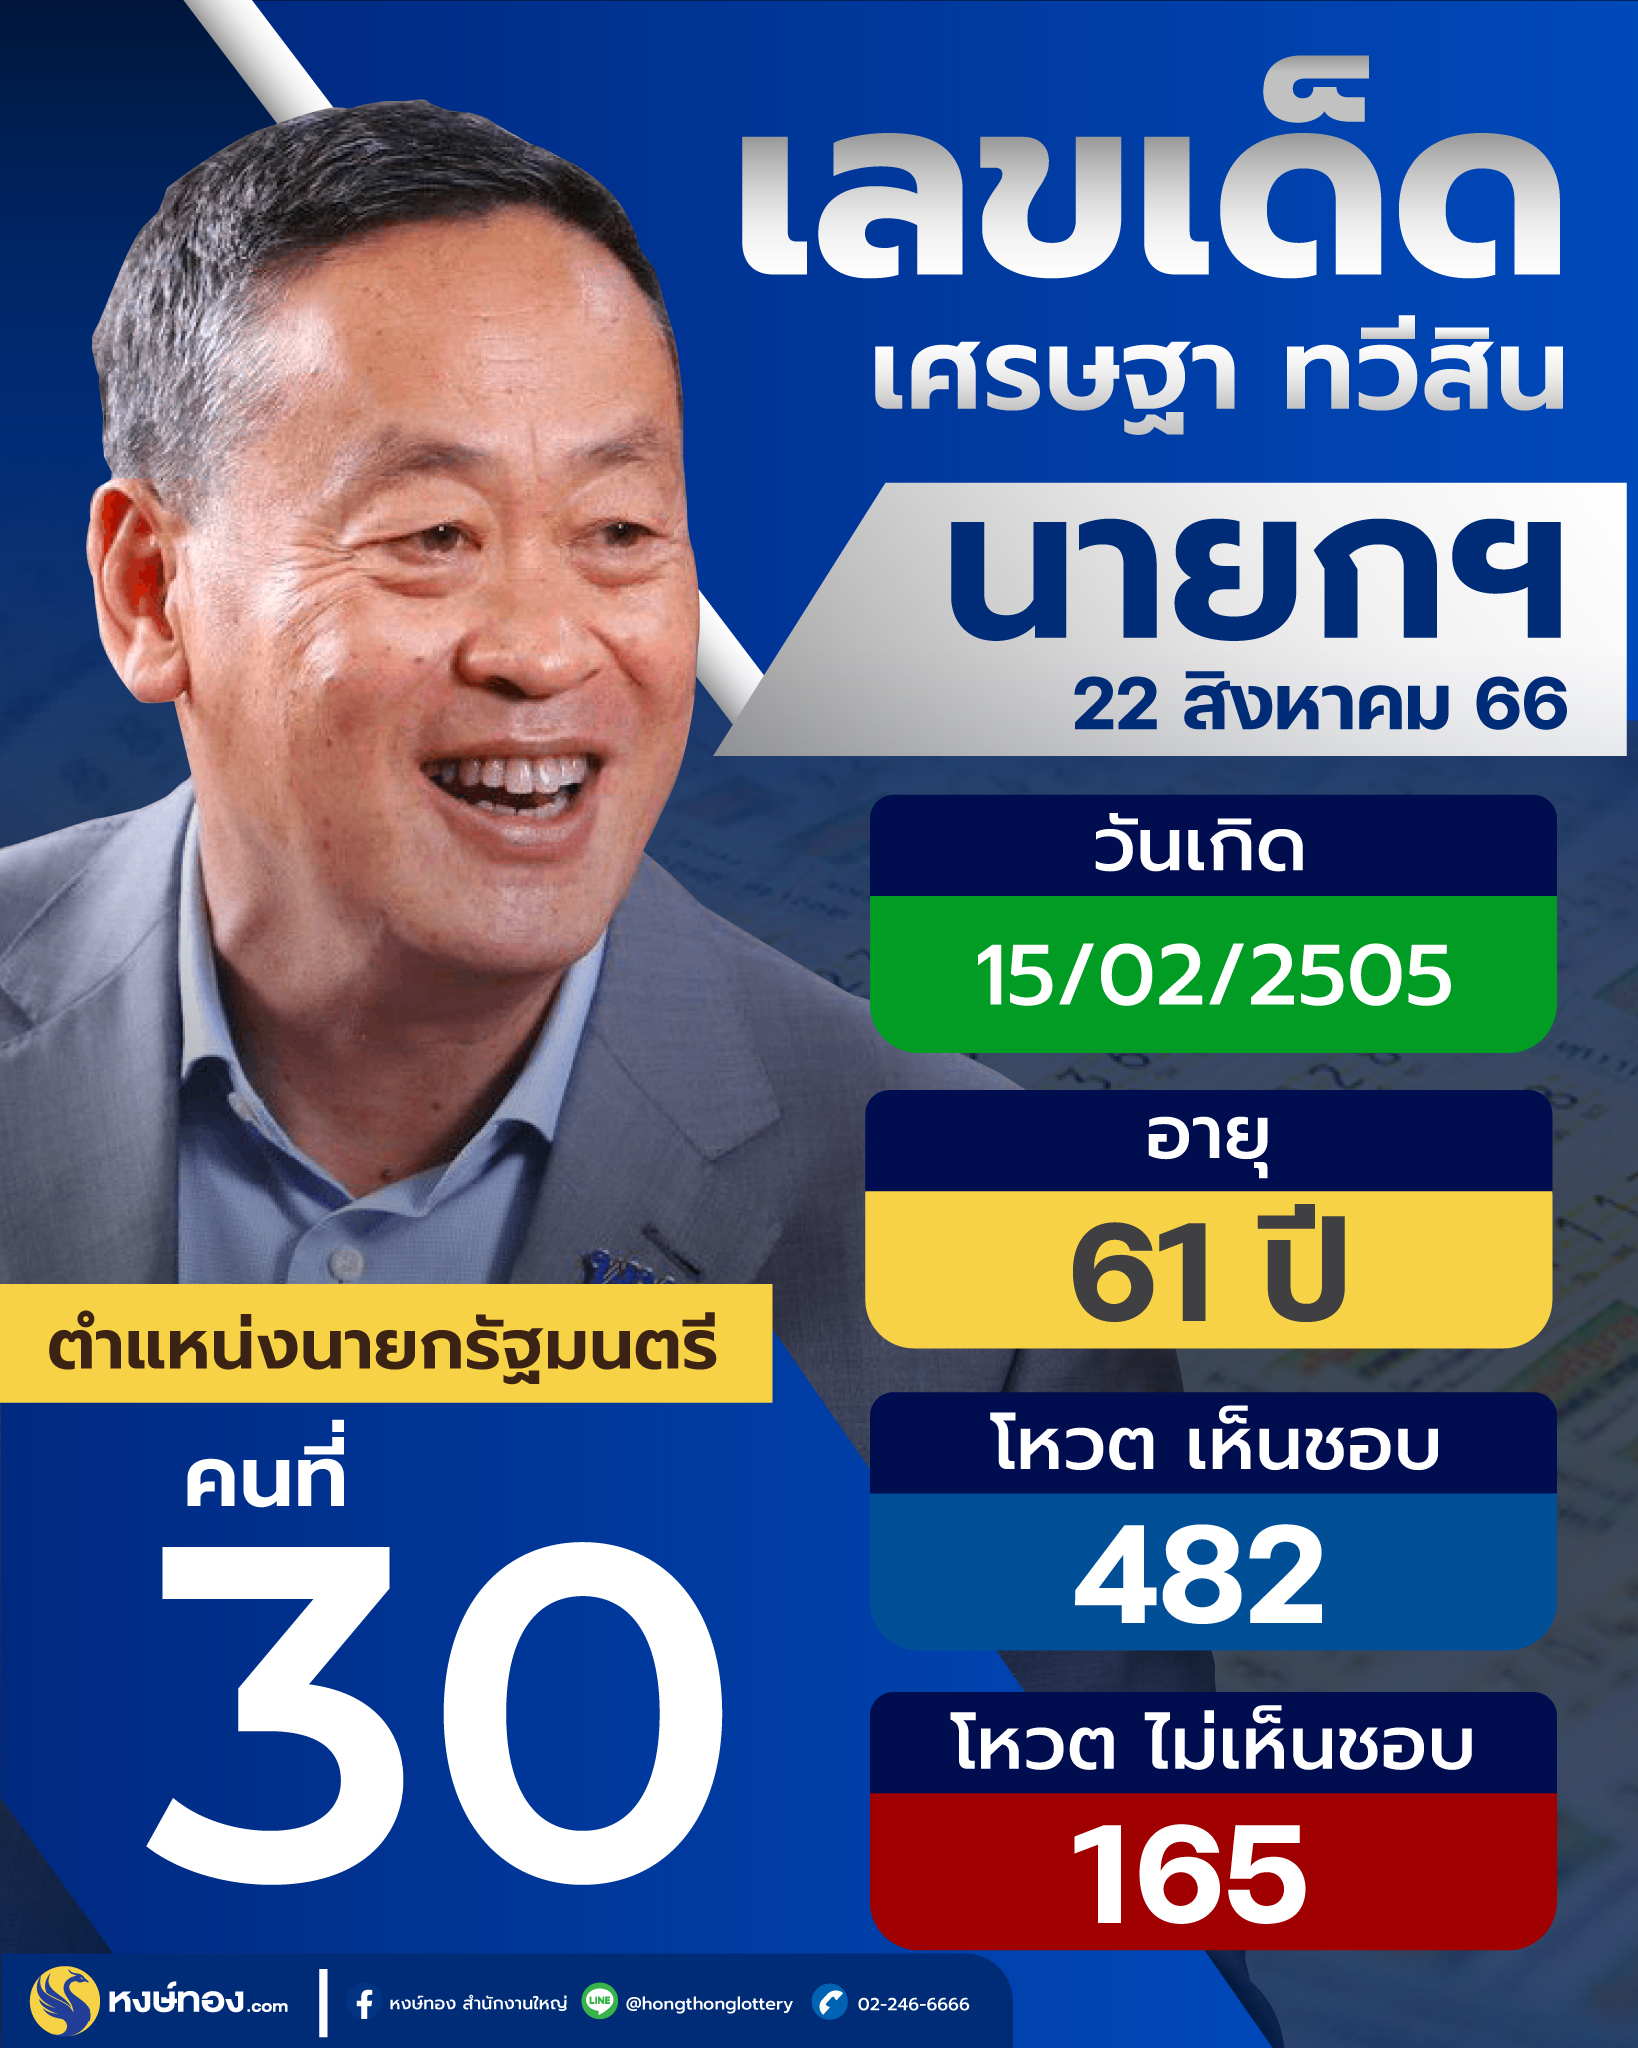 เลขเด็ด_เศรษฐา_ทวีสิน_นายกรัฐมนตรีคนที่_30_ของประเทศไทย